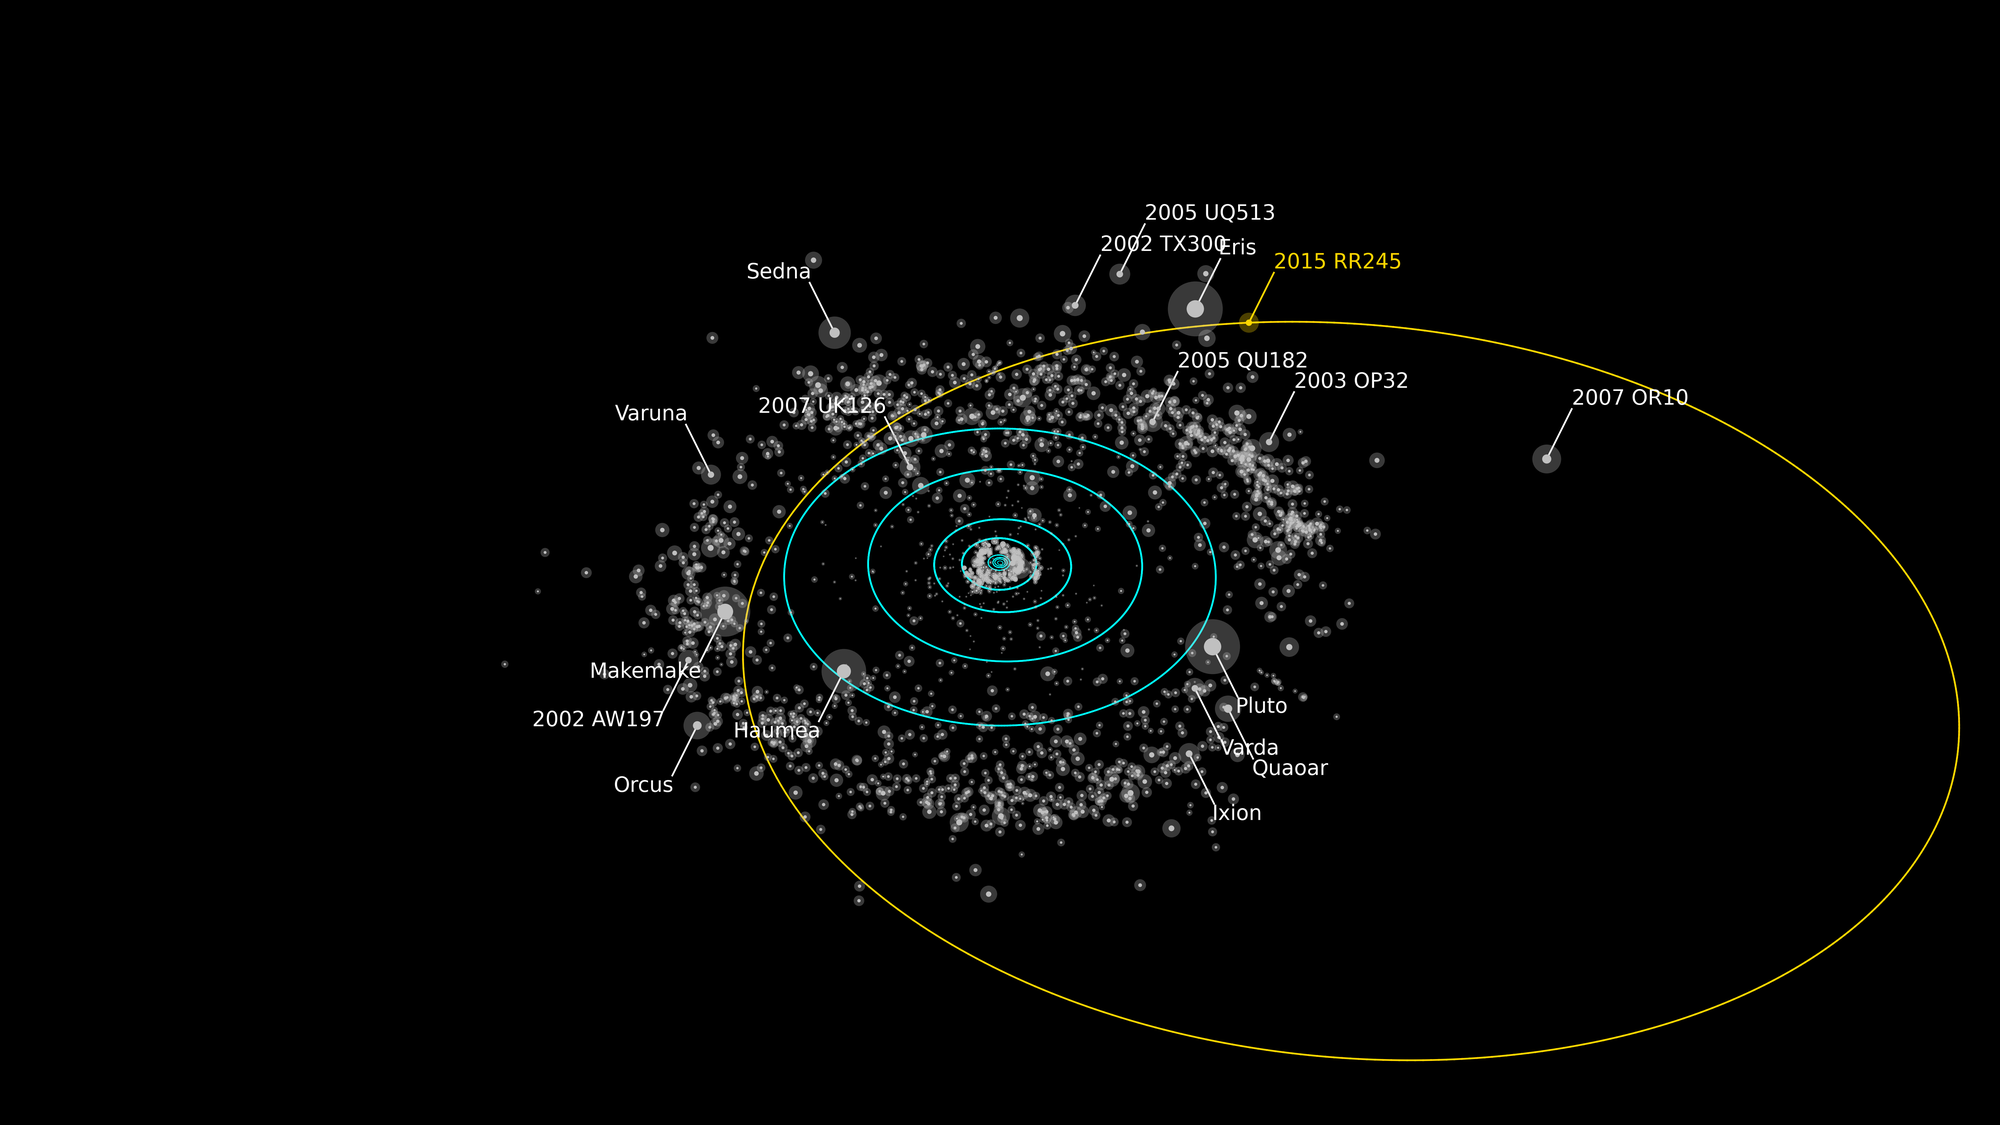 Die Umlaufbahn von 2015 RR245 um die Sonne im Vergleich zu anderen Kuipergürtelobjekten